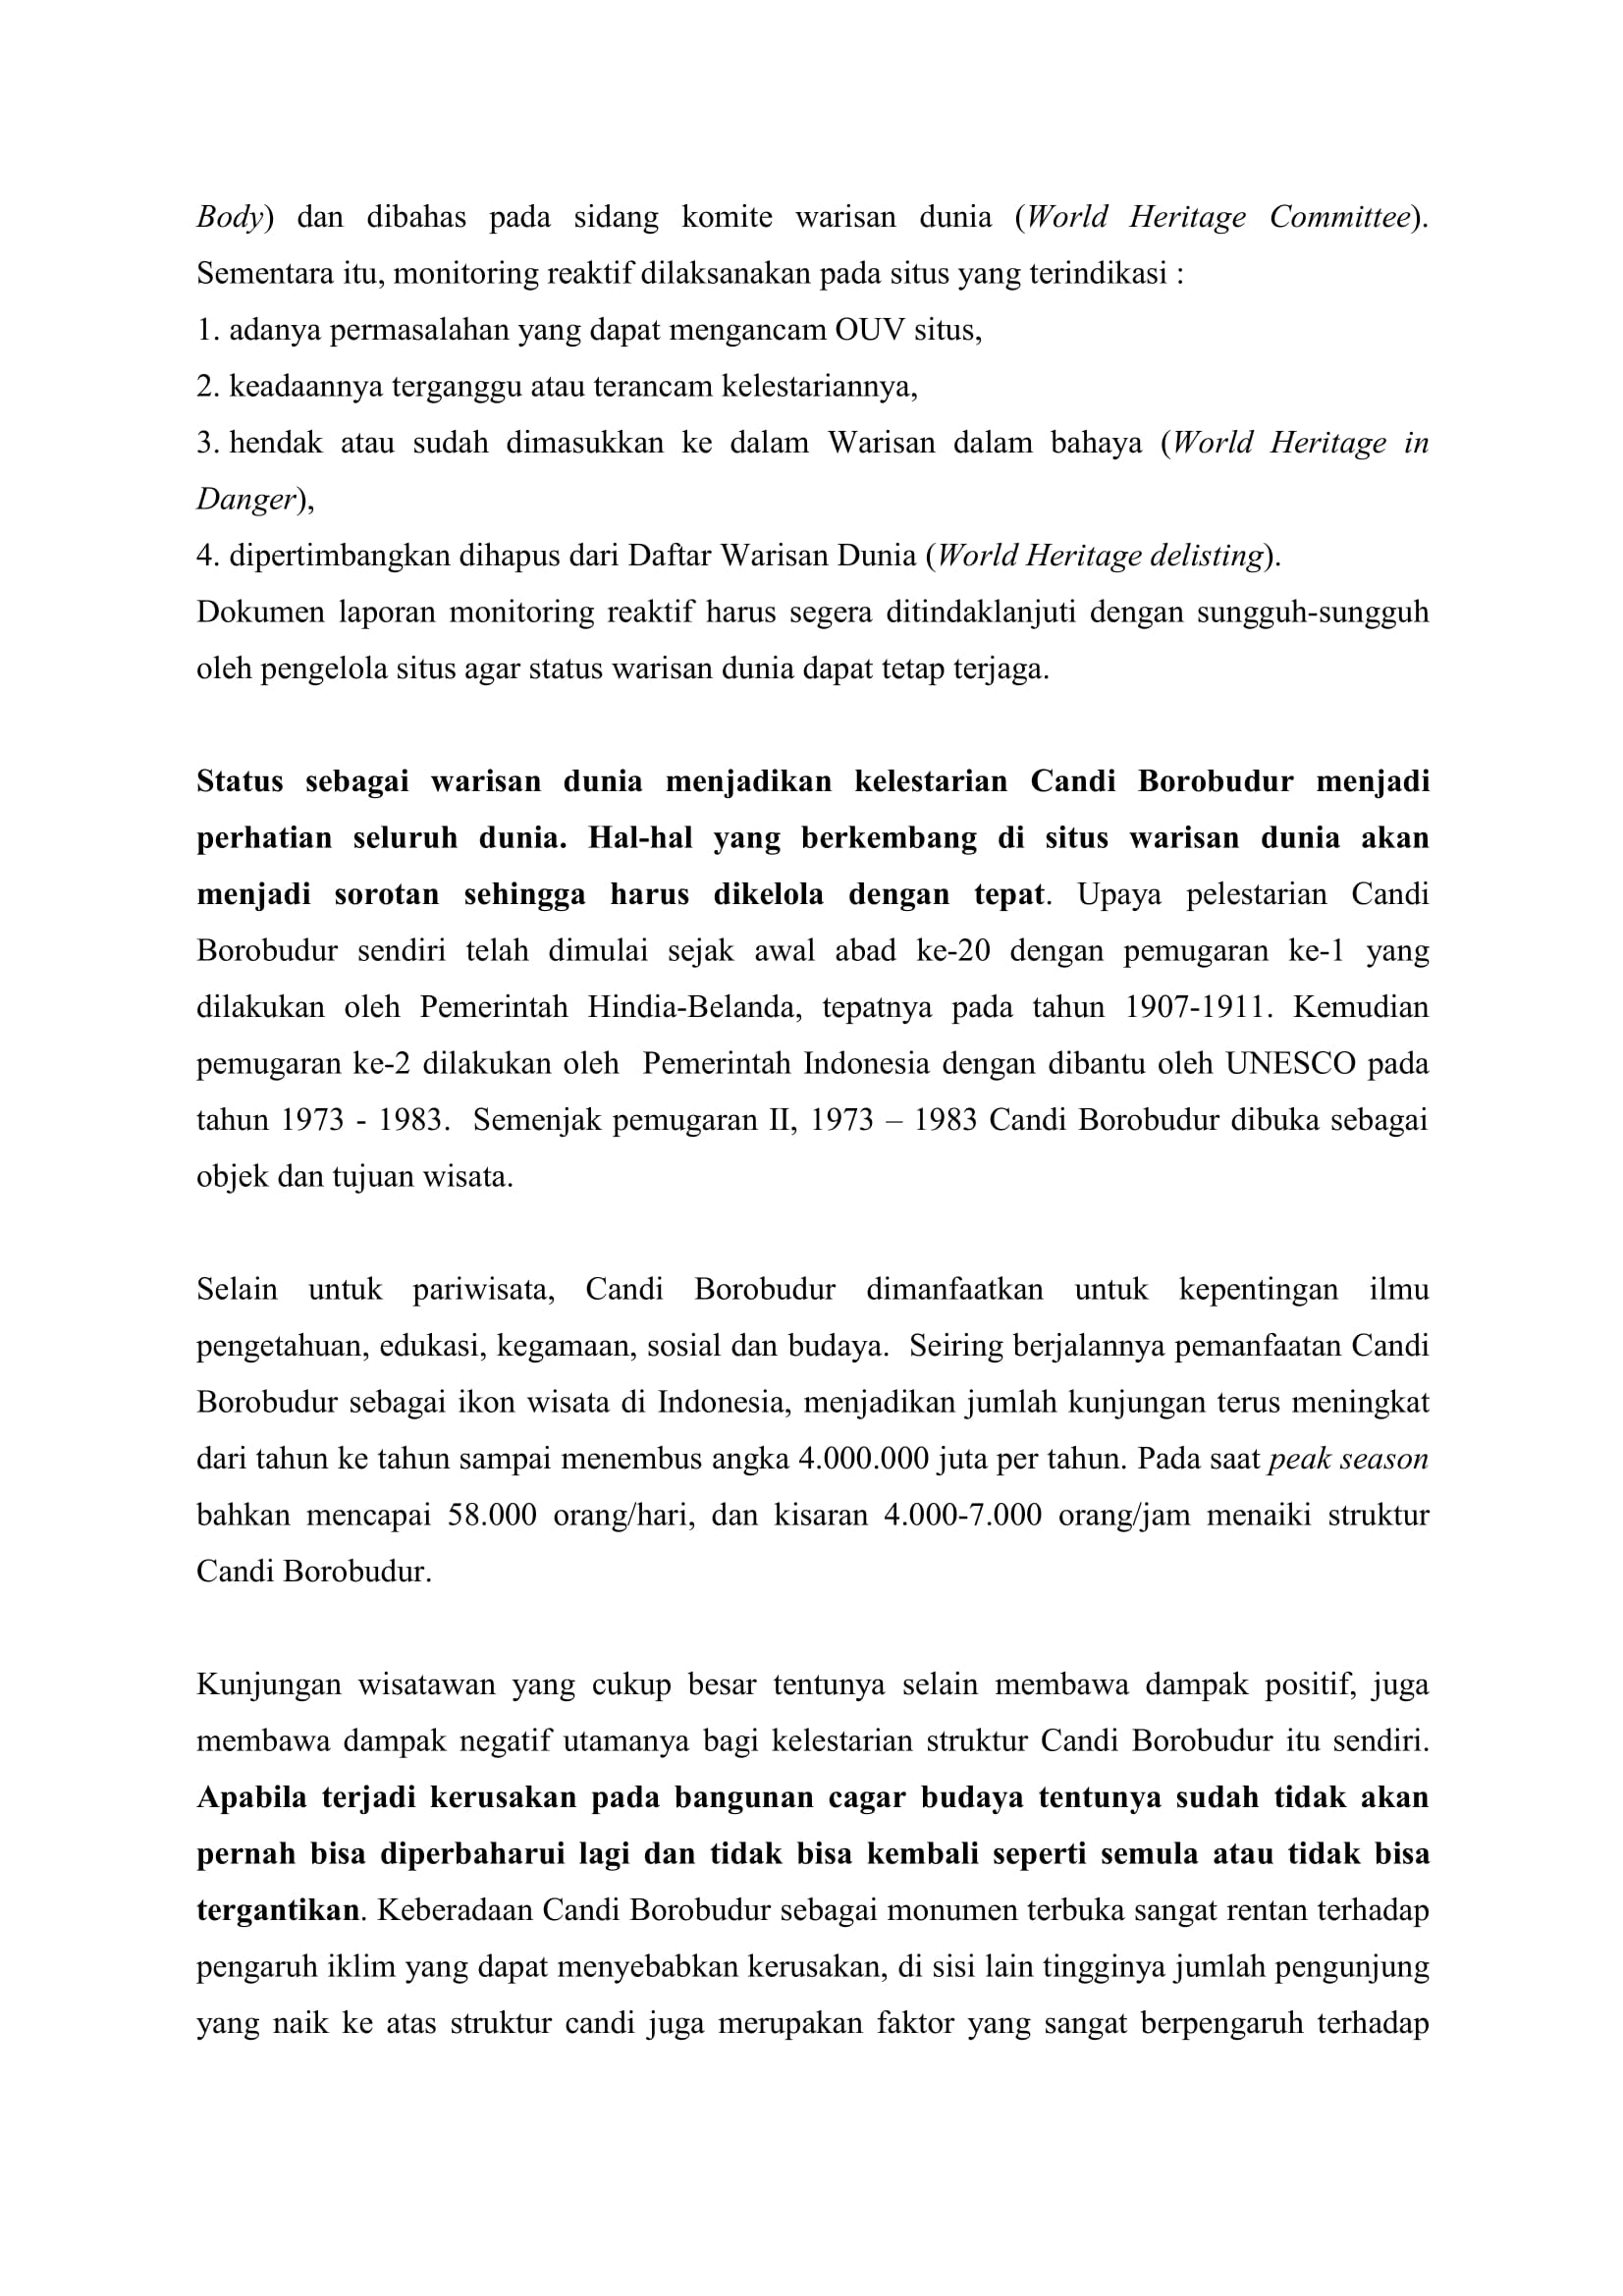 Rilis Pers Pembatasan Kunjungan Di Puncak Candi Borobudur 2 Balai Konservasi Borobudur